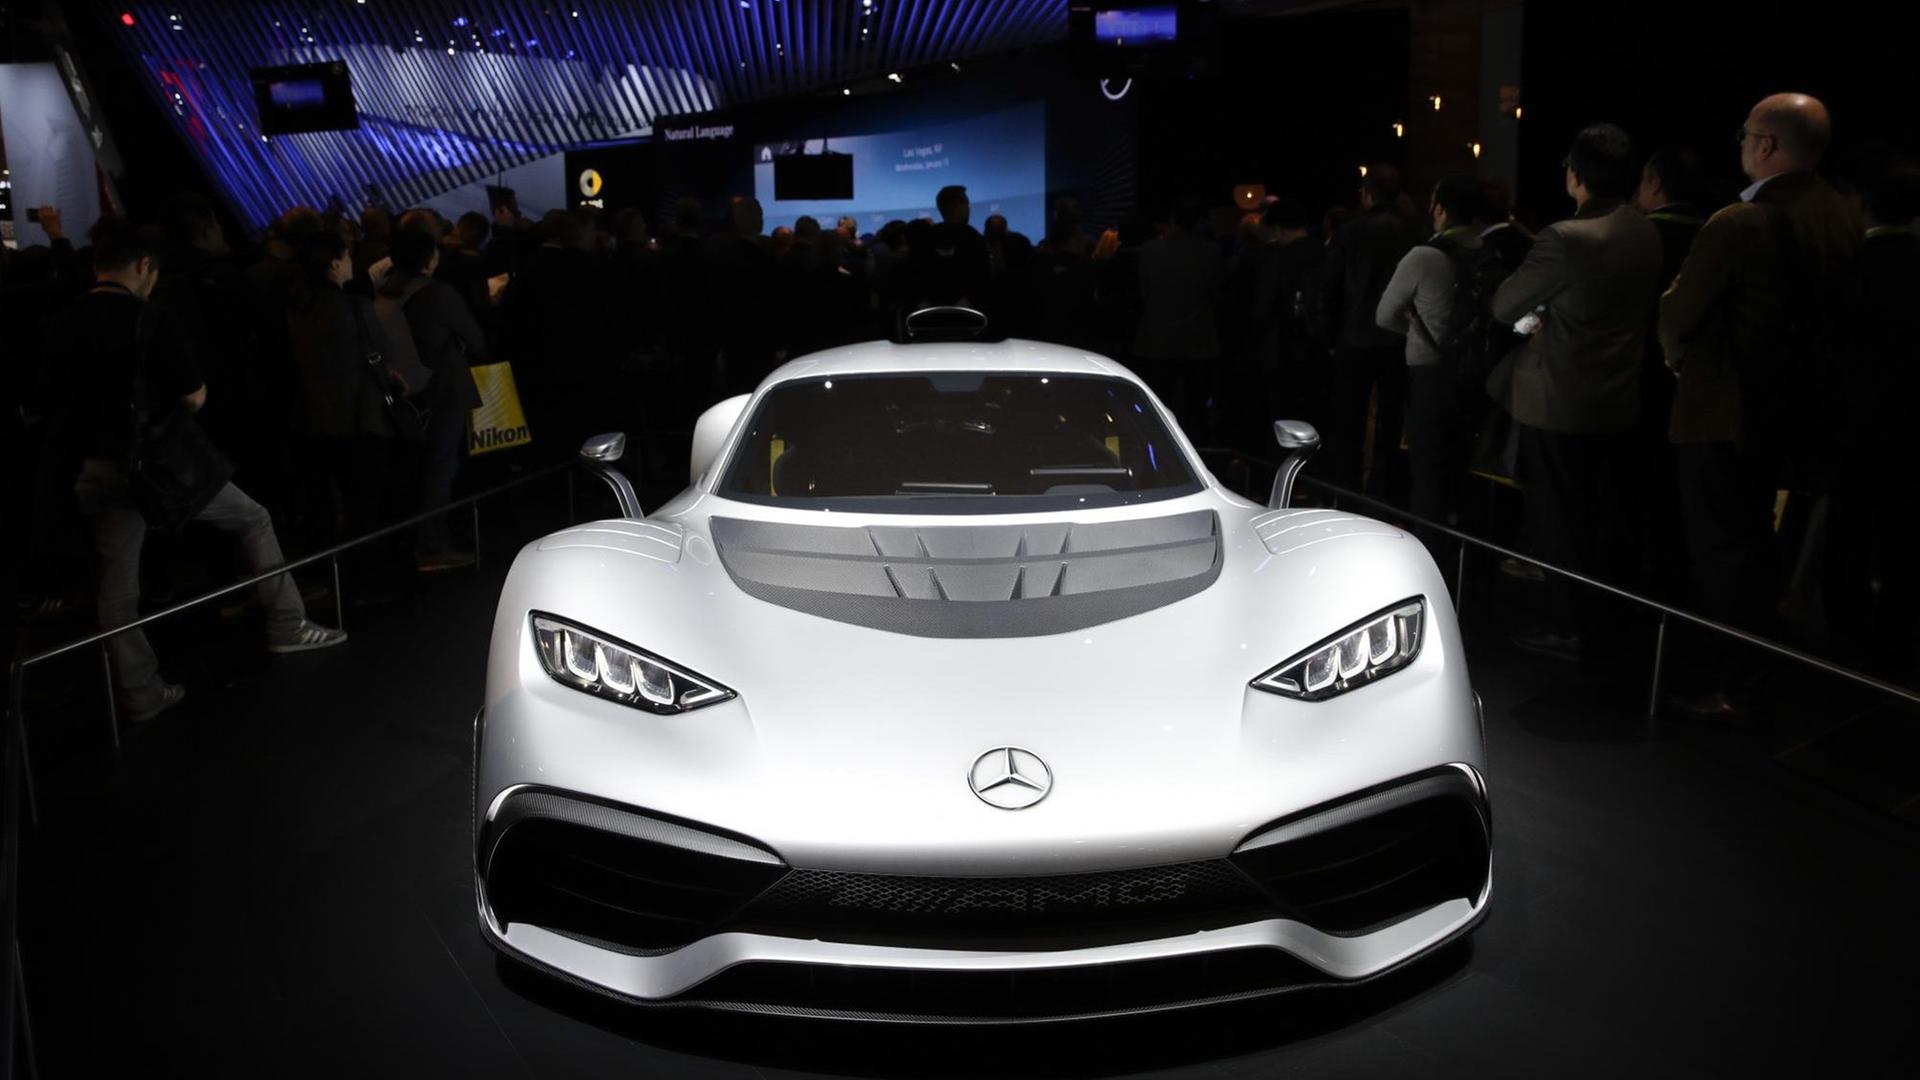 Technik-Messe CES am 09.01.2018 in Las Vegas (USA). Ein Einschub-Hybrid-AMG-Sportwagen von Mercedes wird den Messebesuchern präsentiert.